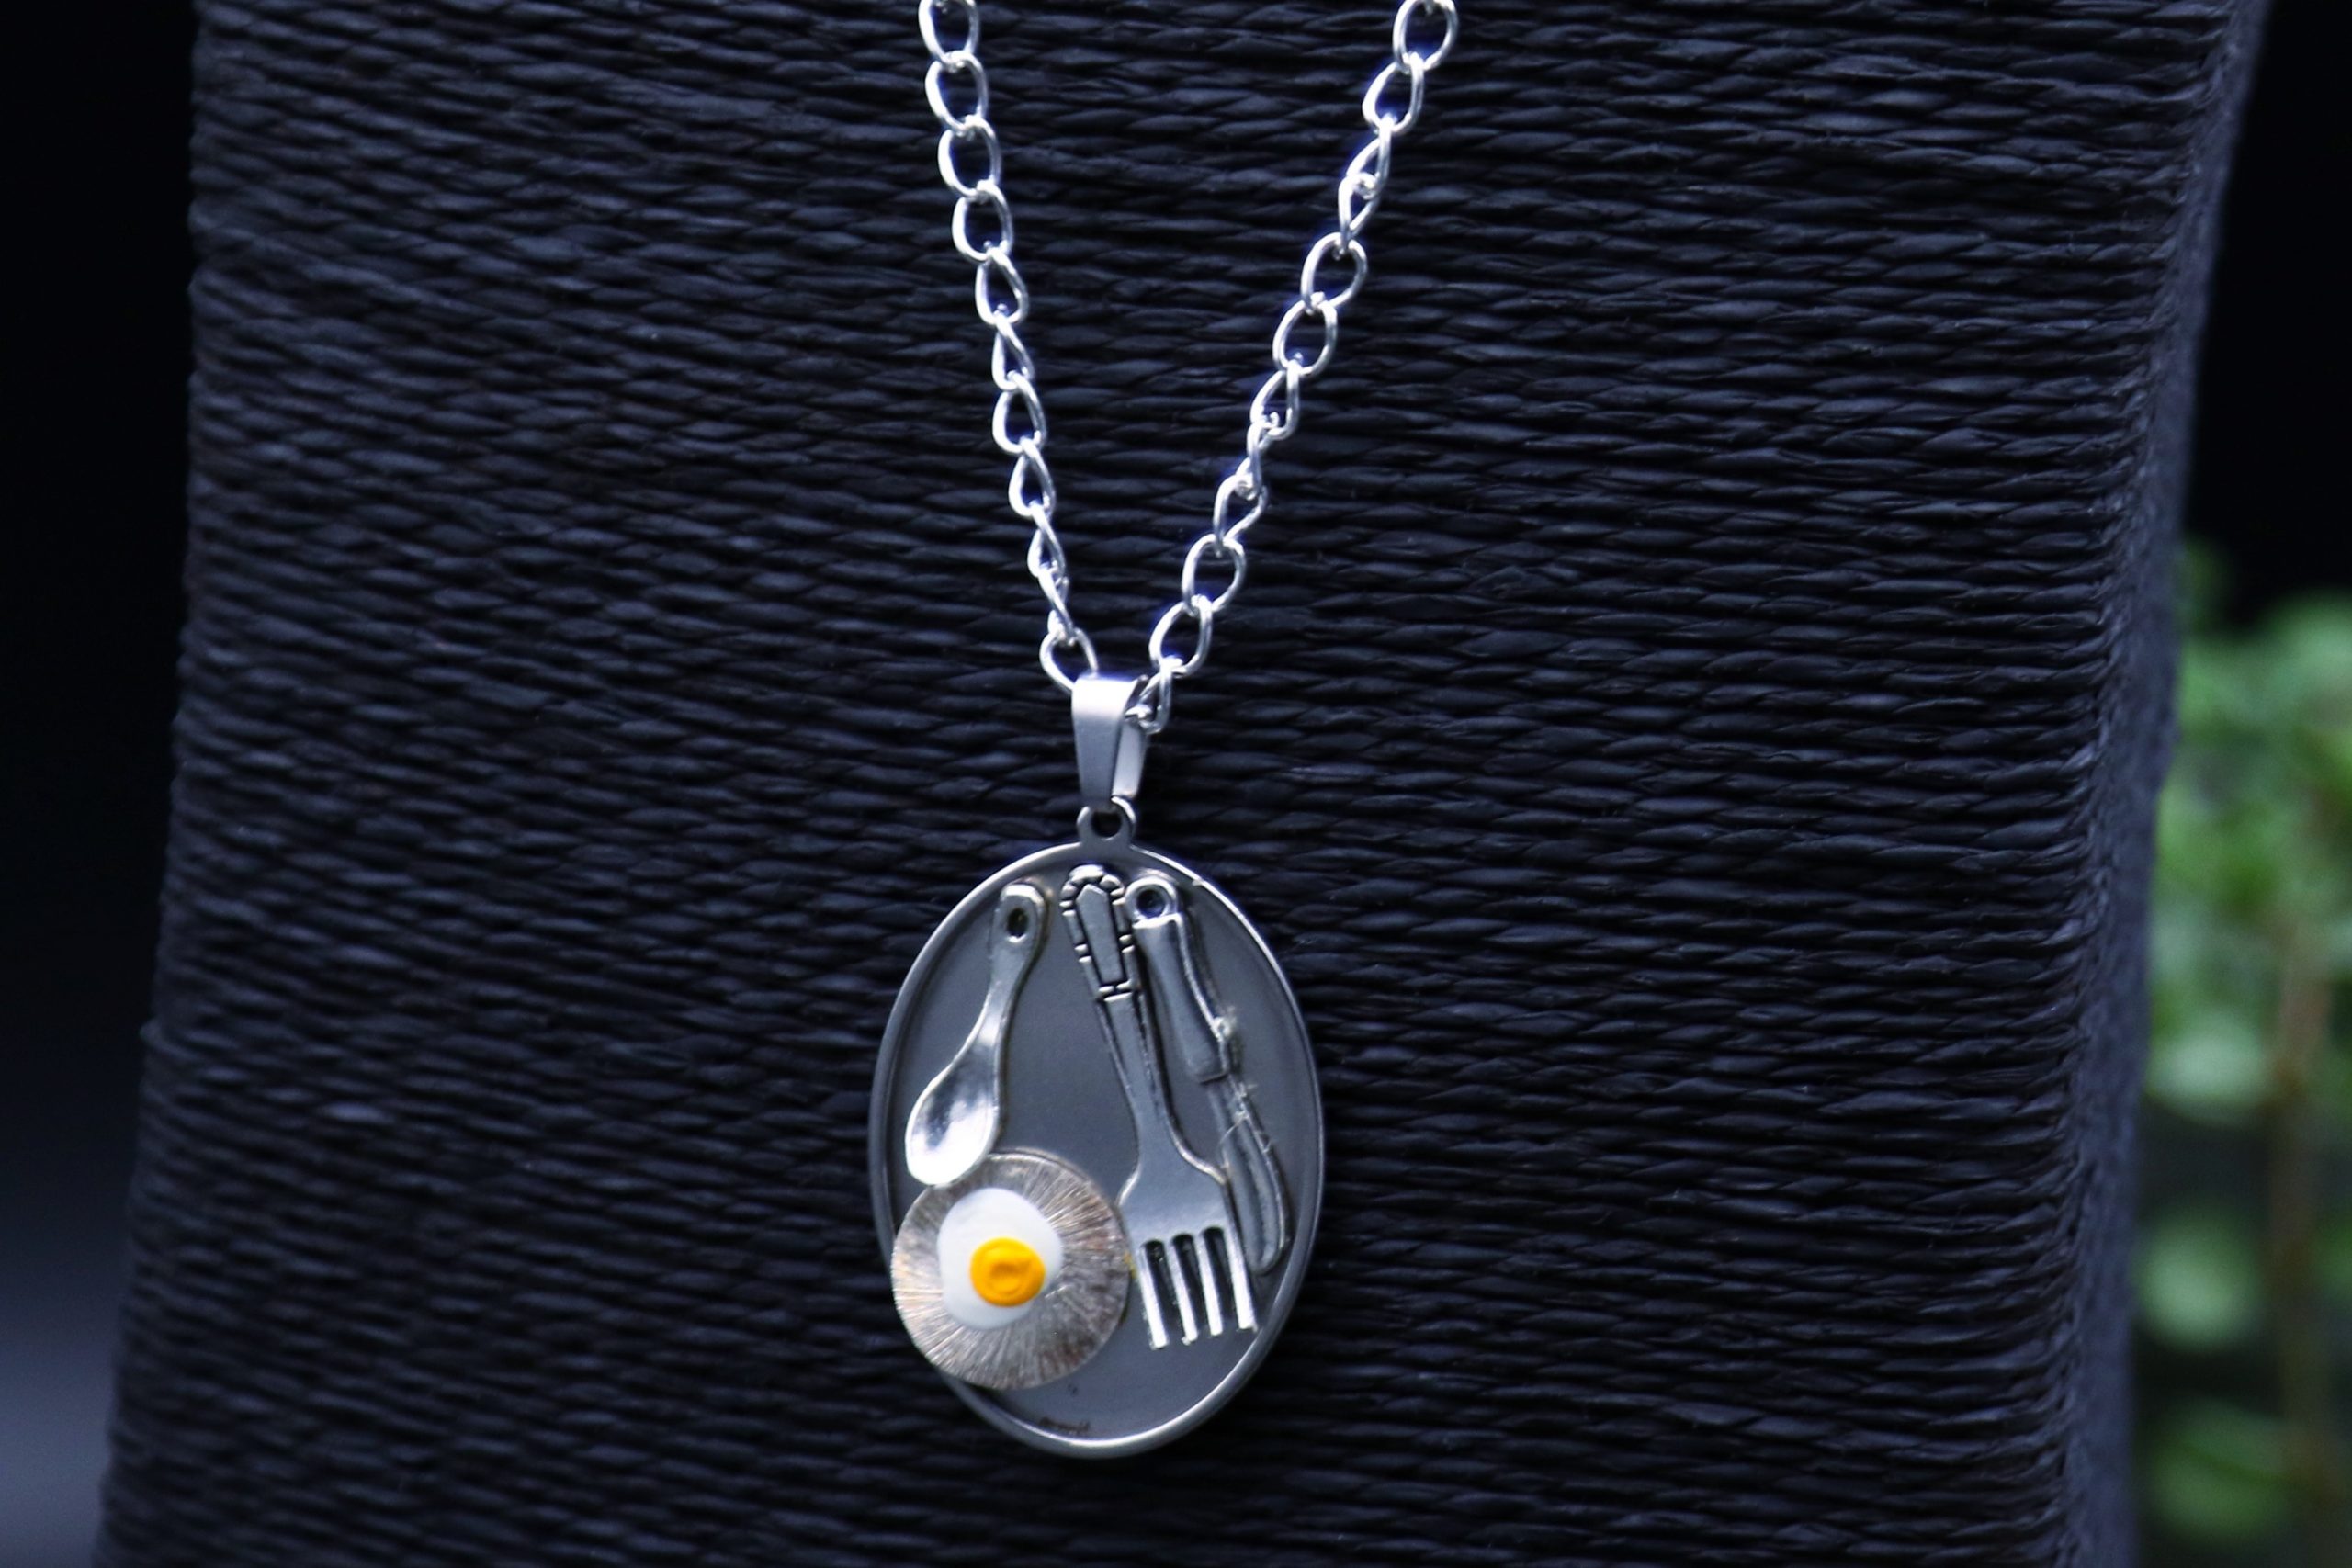 Breakfast necklace